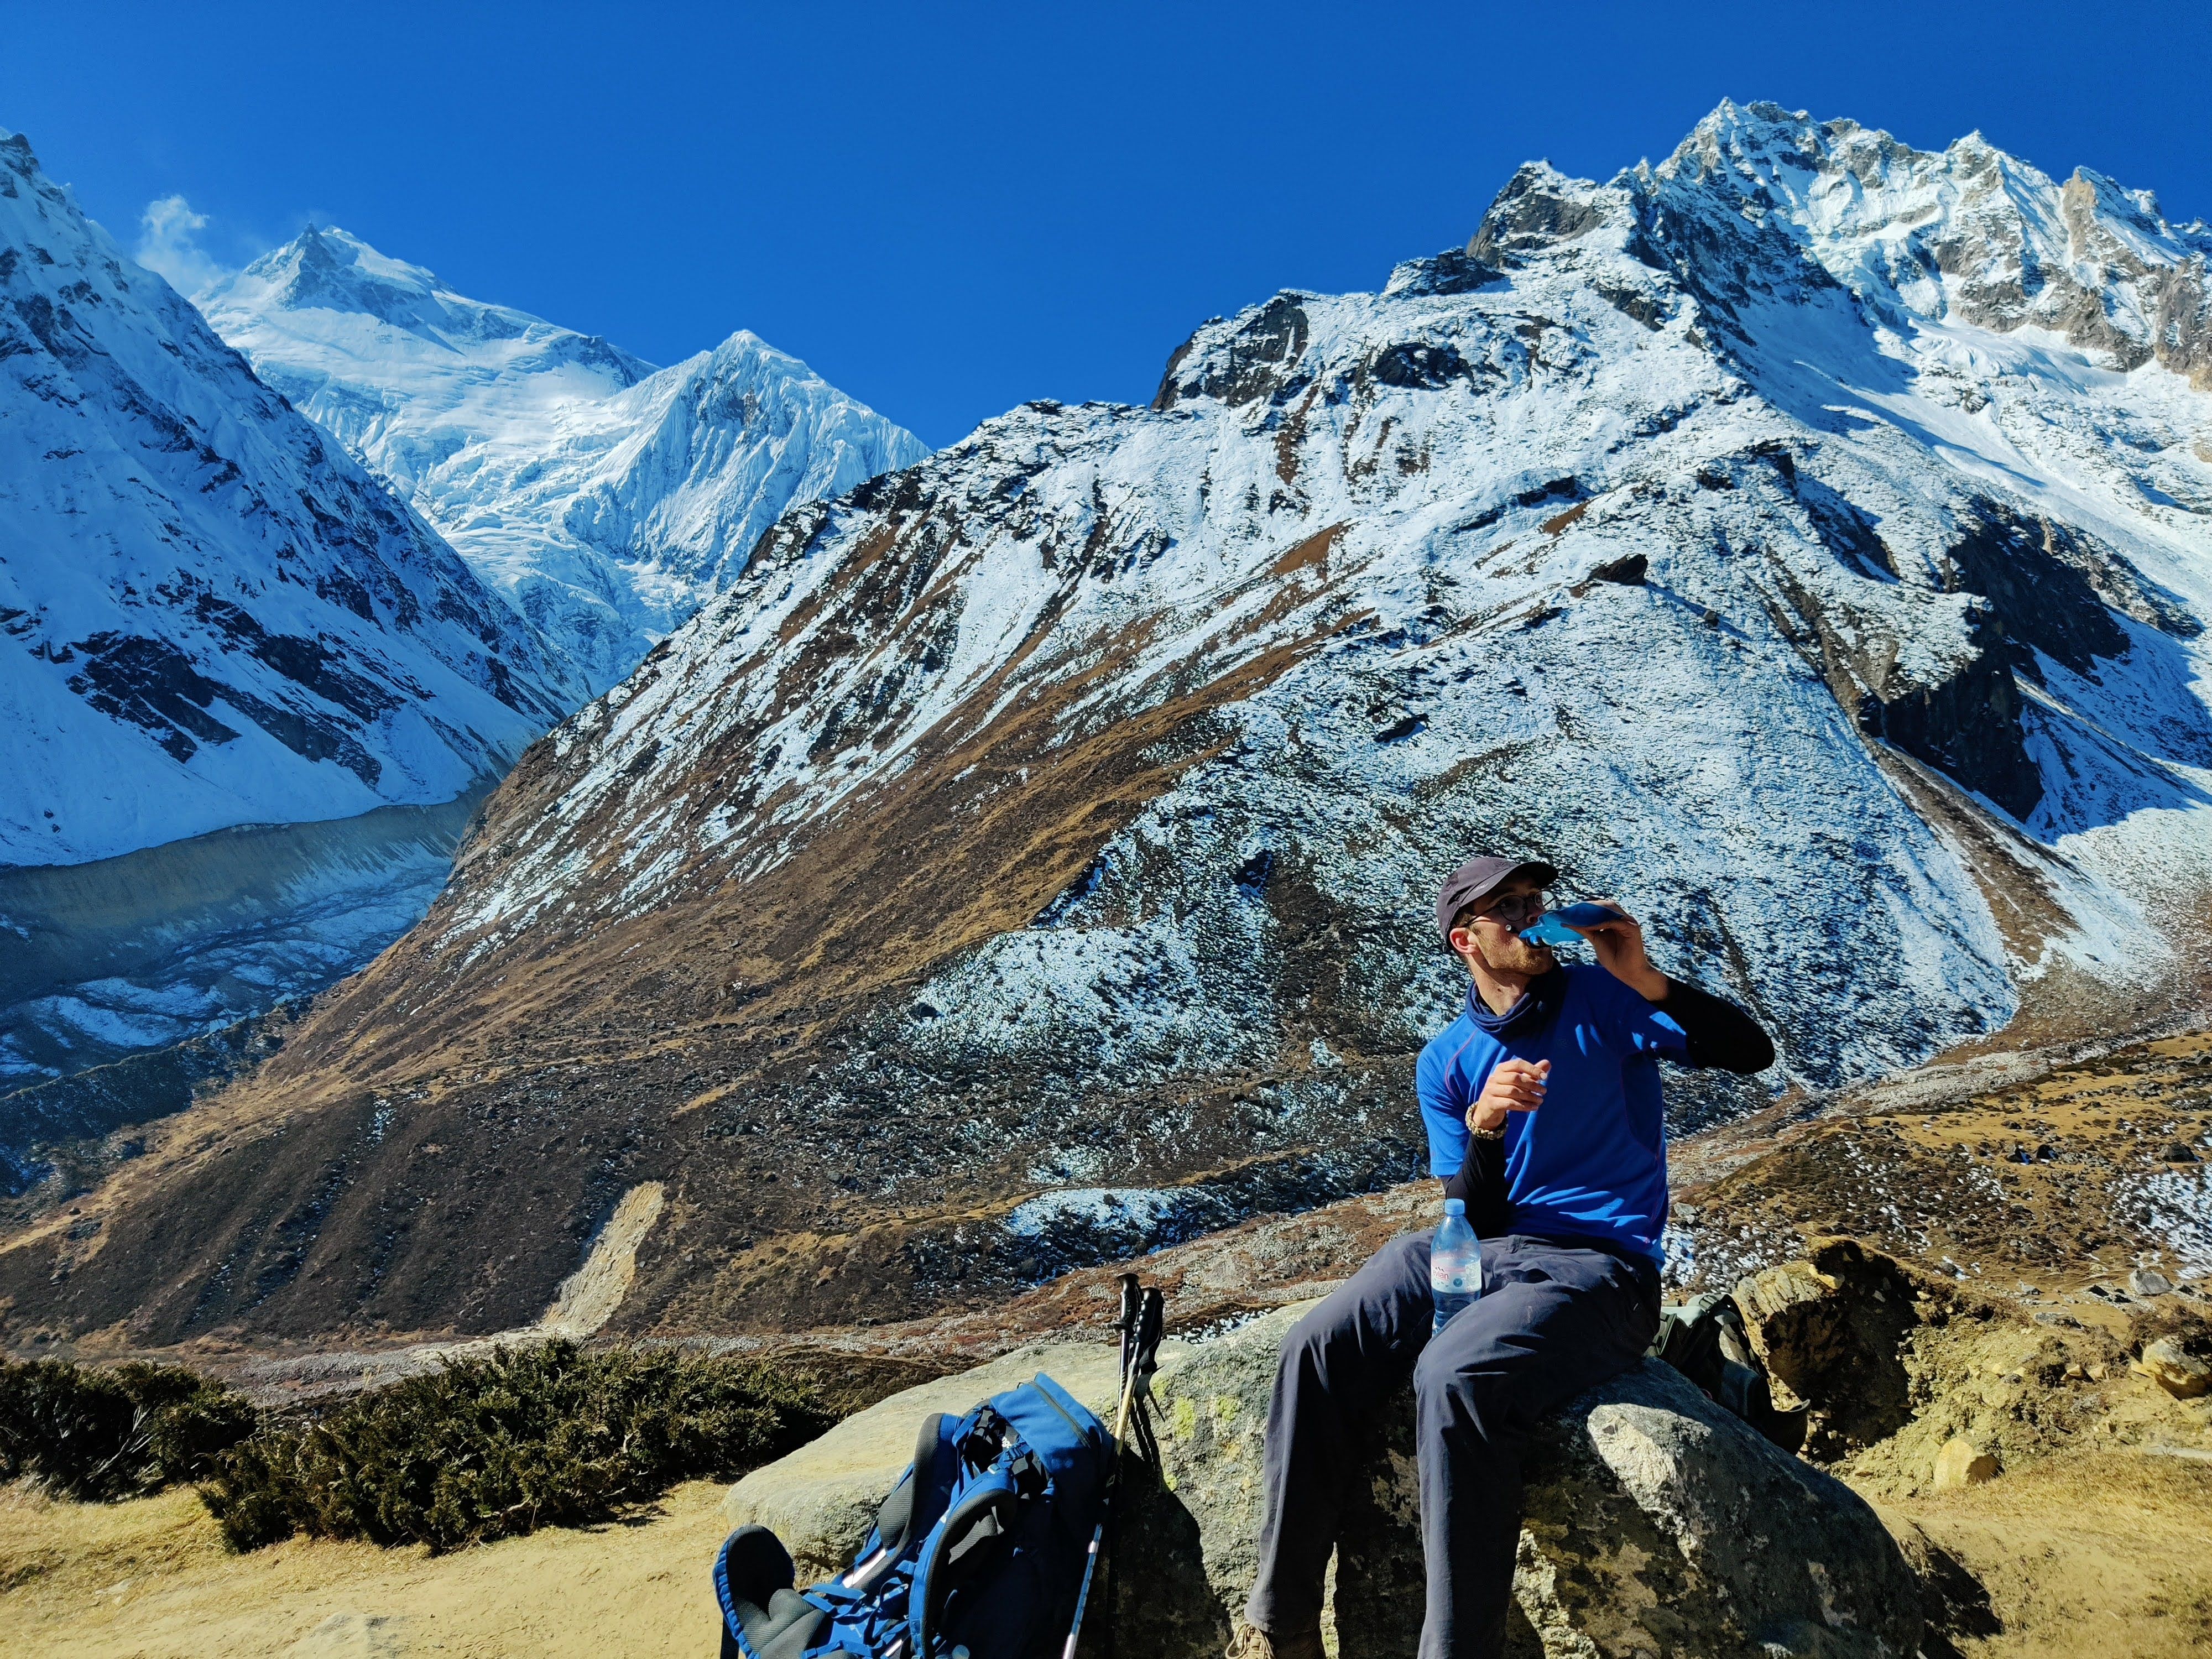 Student trekking in Nepal